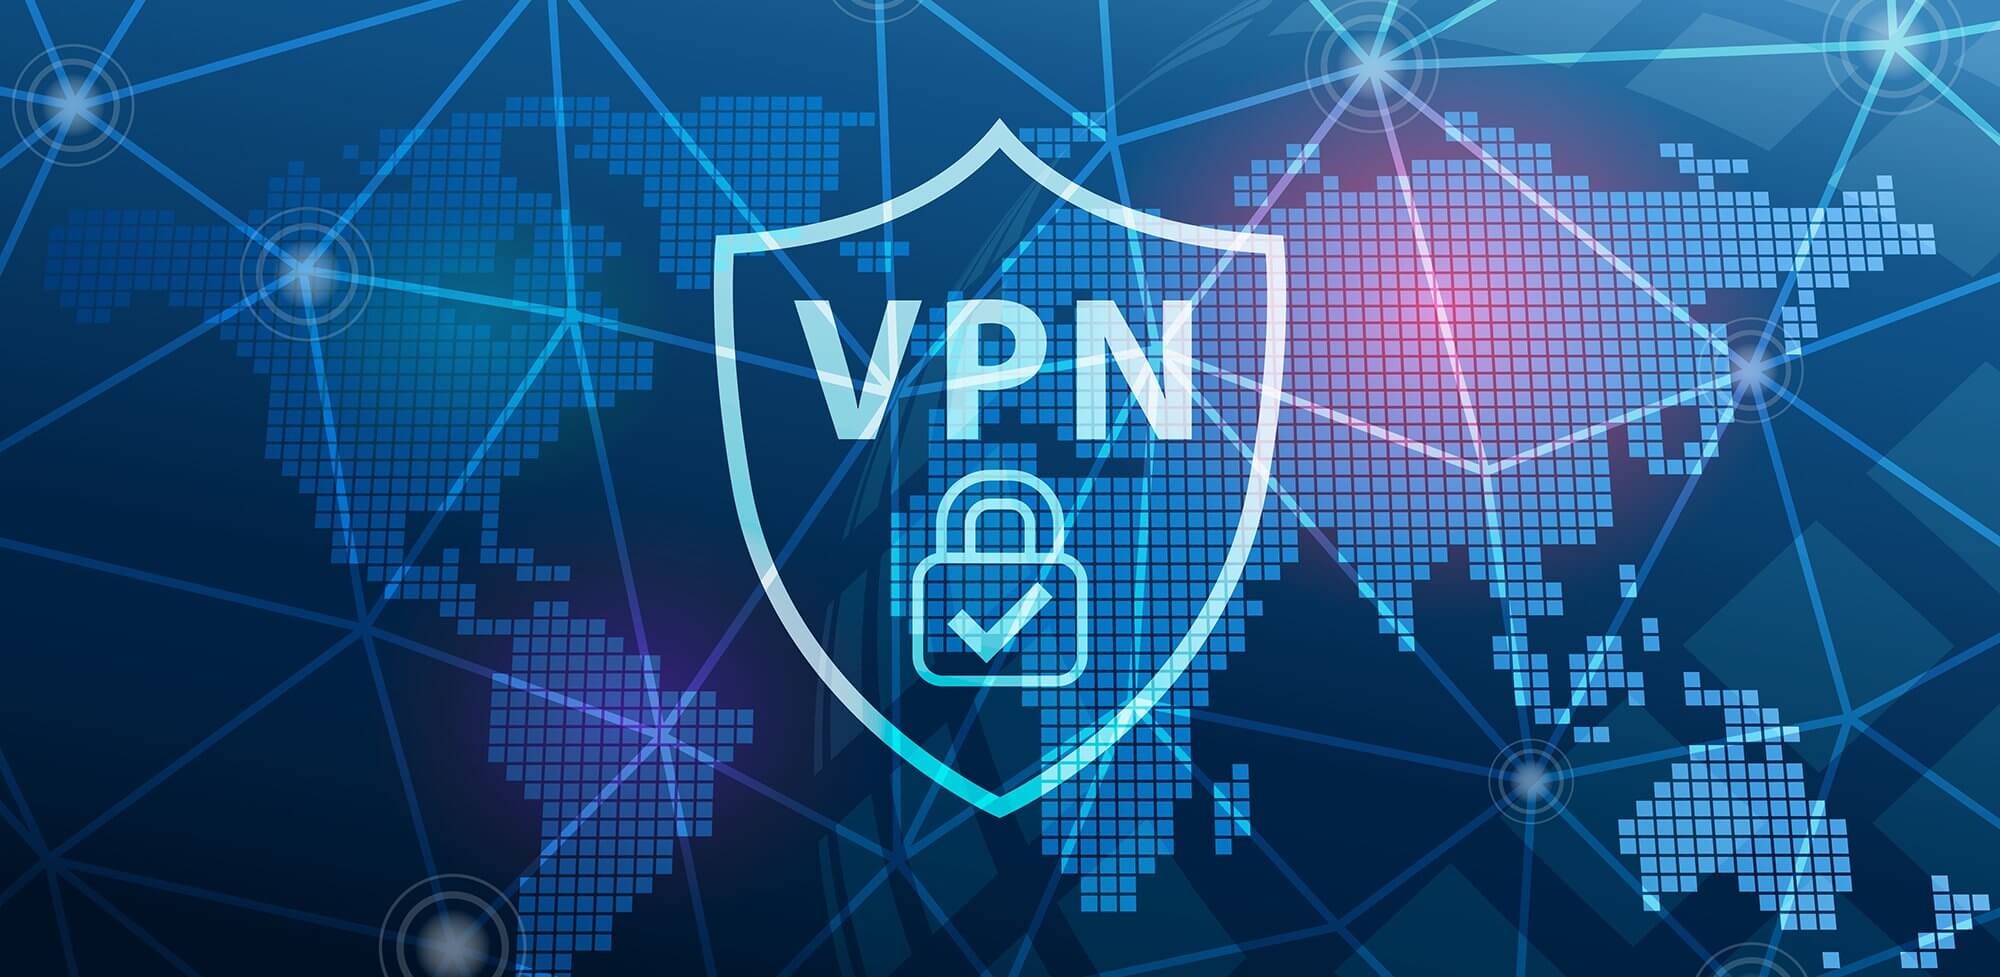 افضل مواقع تقدم خدمة VPN سريع 2021